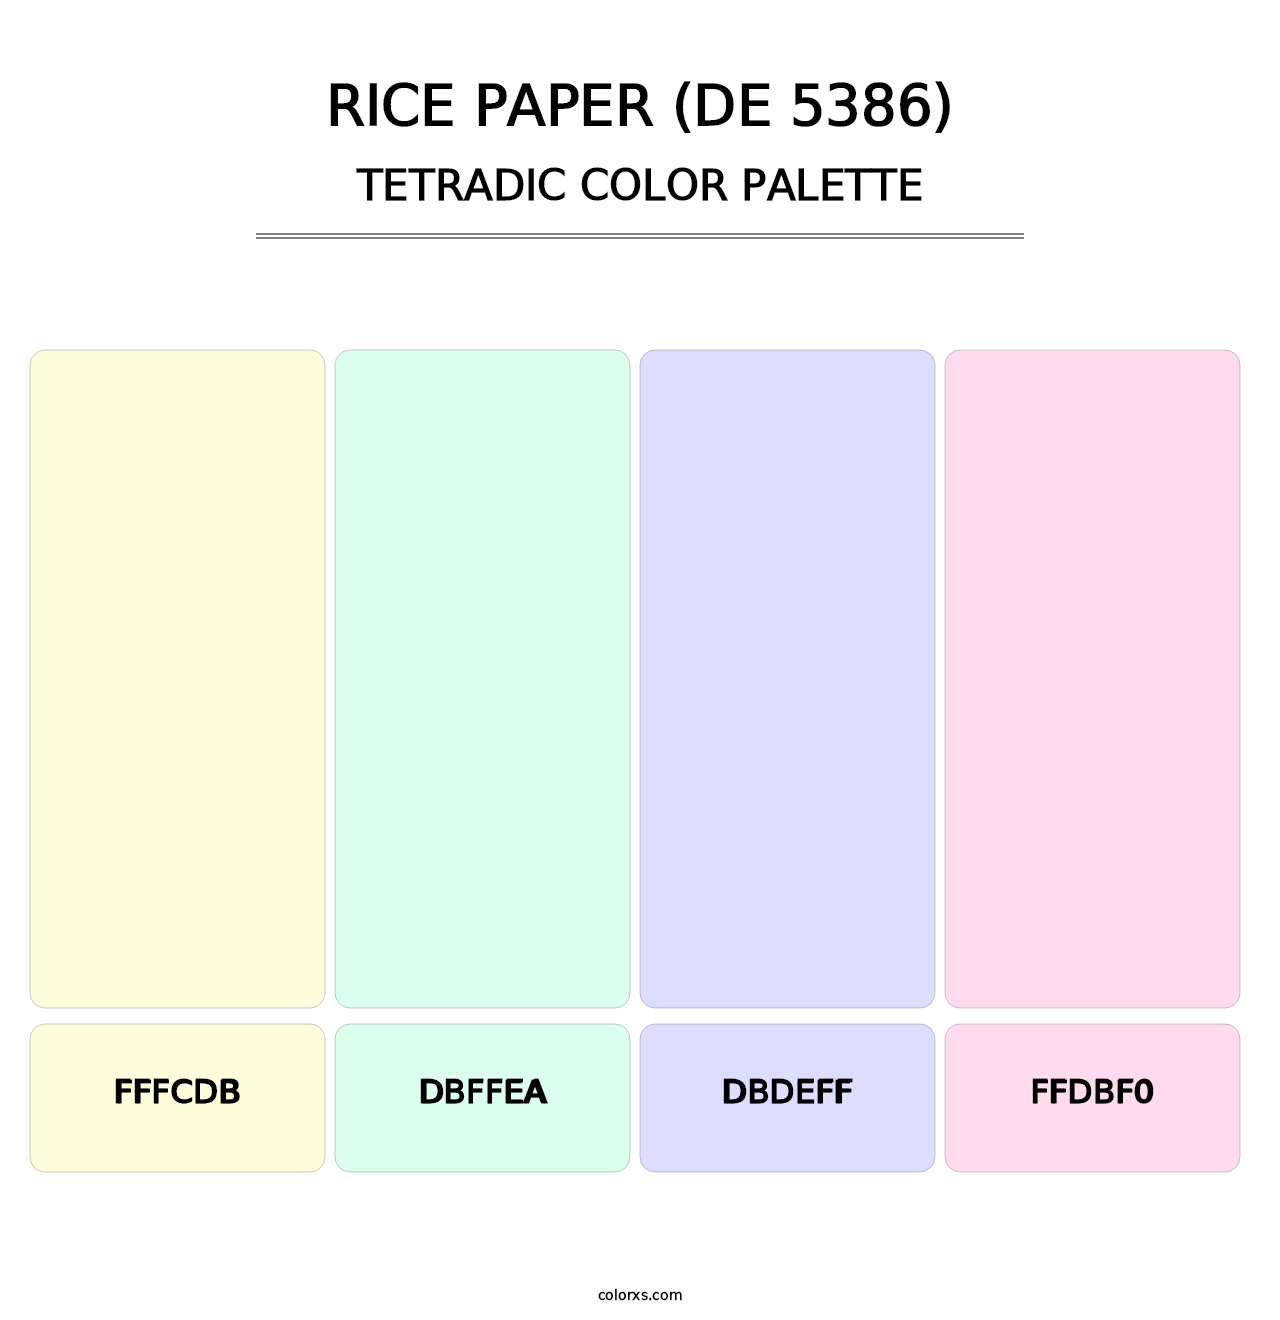 Rice Paper (DE 5386) - Tetradic Color Palette